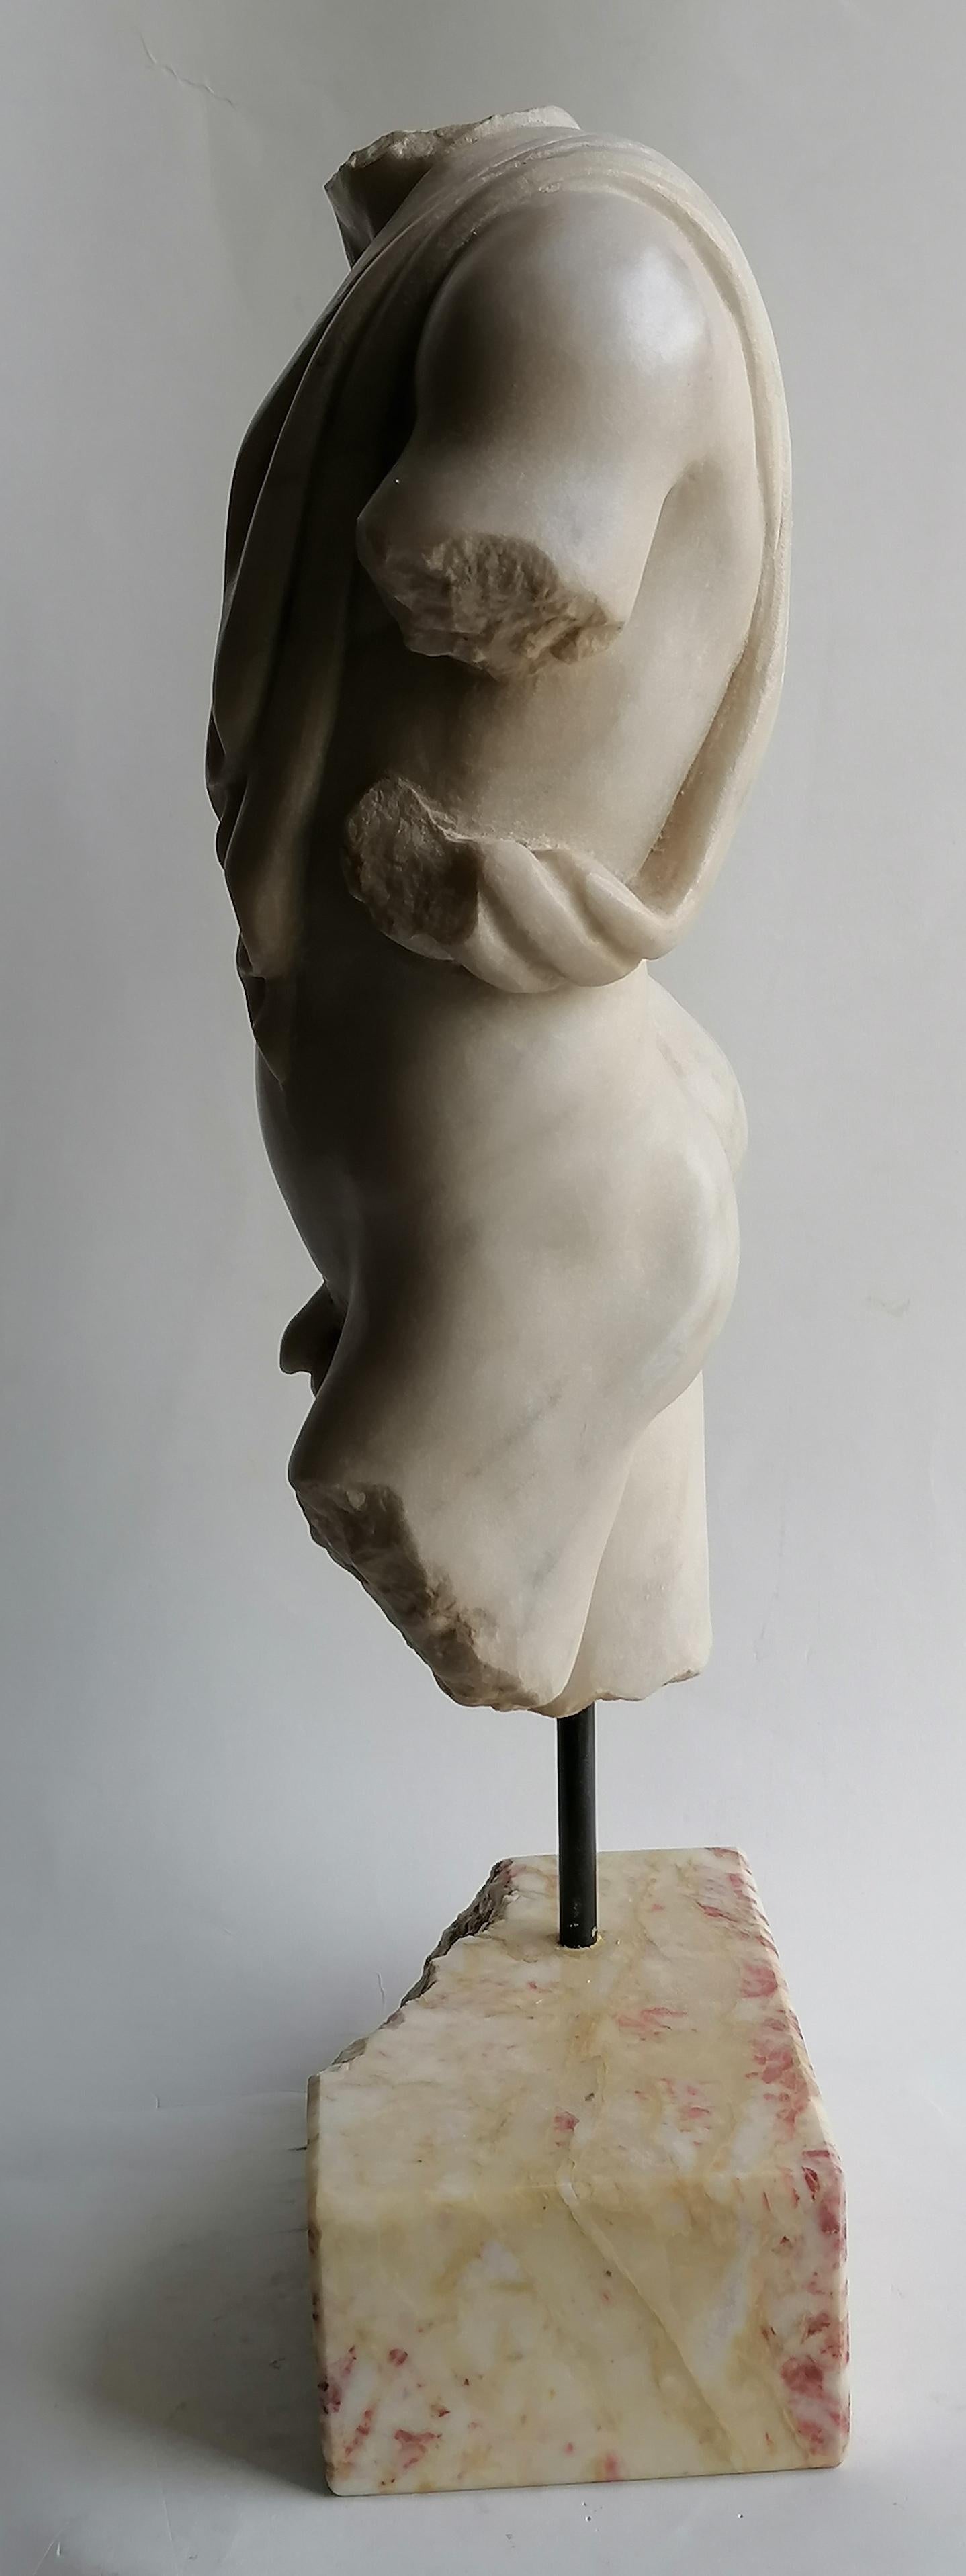 Hand-Crafted Torso maschile con panneggio. scolpito su marmo bianco di Carrara For Sale